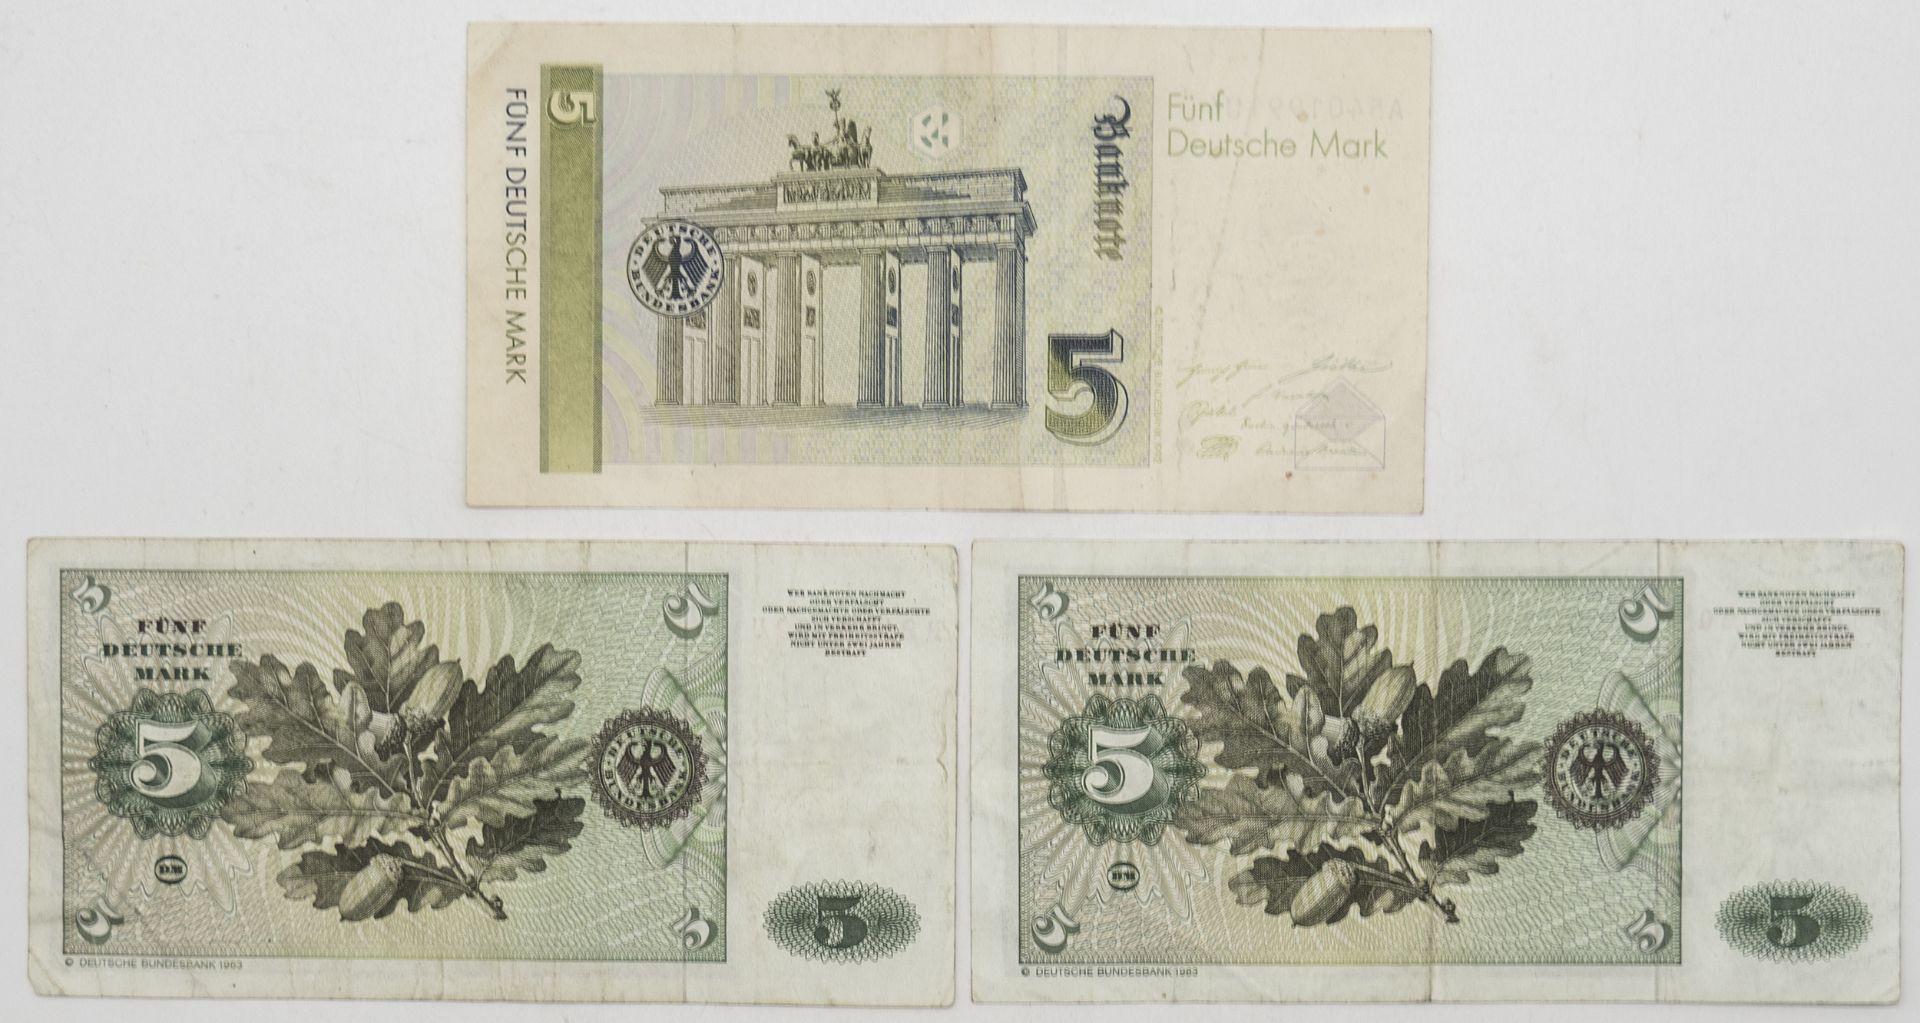 BRD 1980/91, 3 x 5 DM - Banknoten. 1980 Serie B, 1991 Serie A. Erhaltung: s - ss. - Bild 2 aus 2